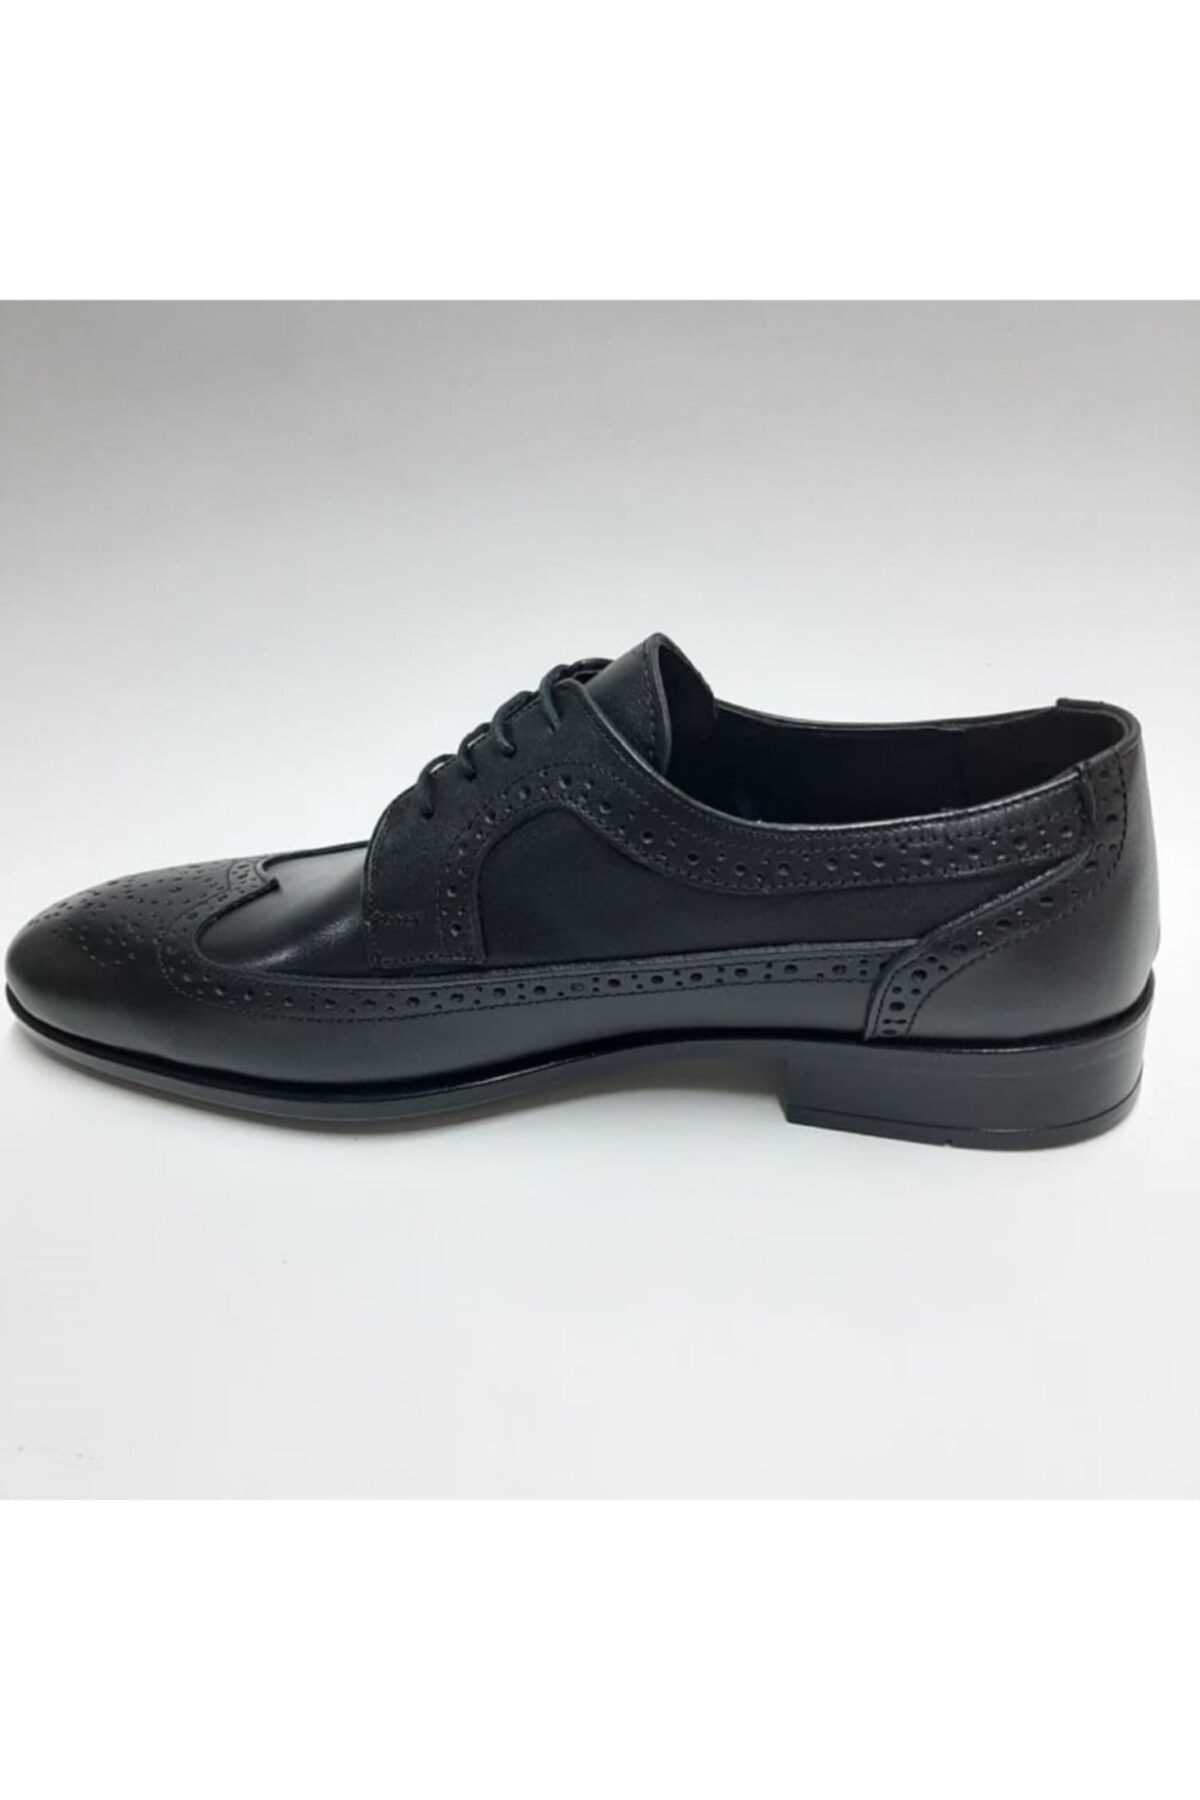 فروش نقدی کفش کلاسیک مردانه خاص برند Antioch رنگ مشکی کد ty102752474